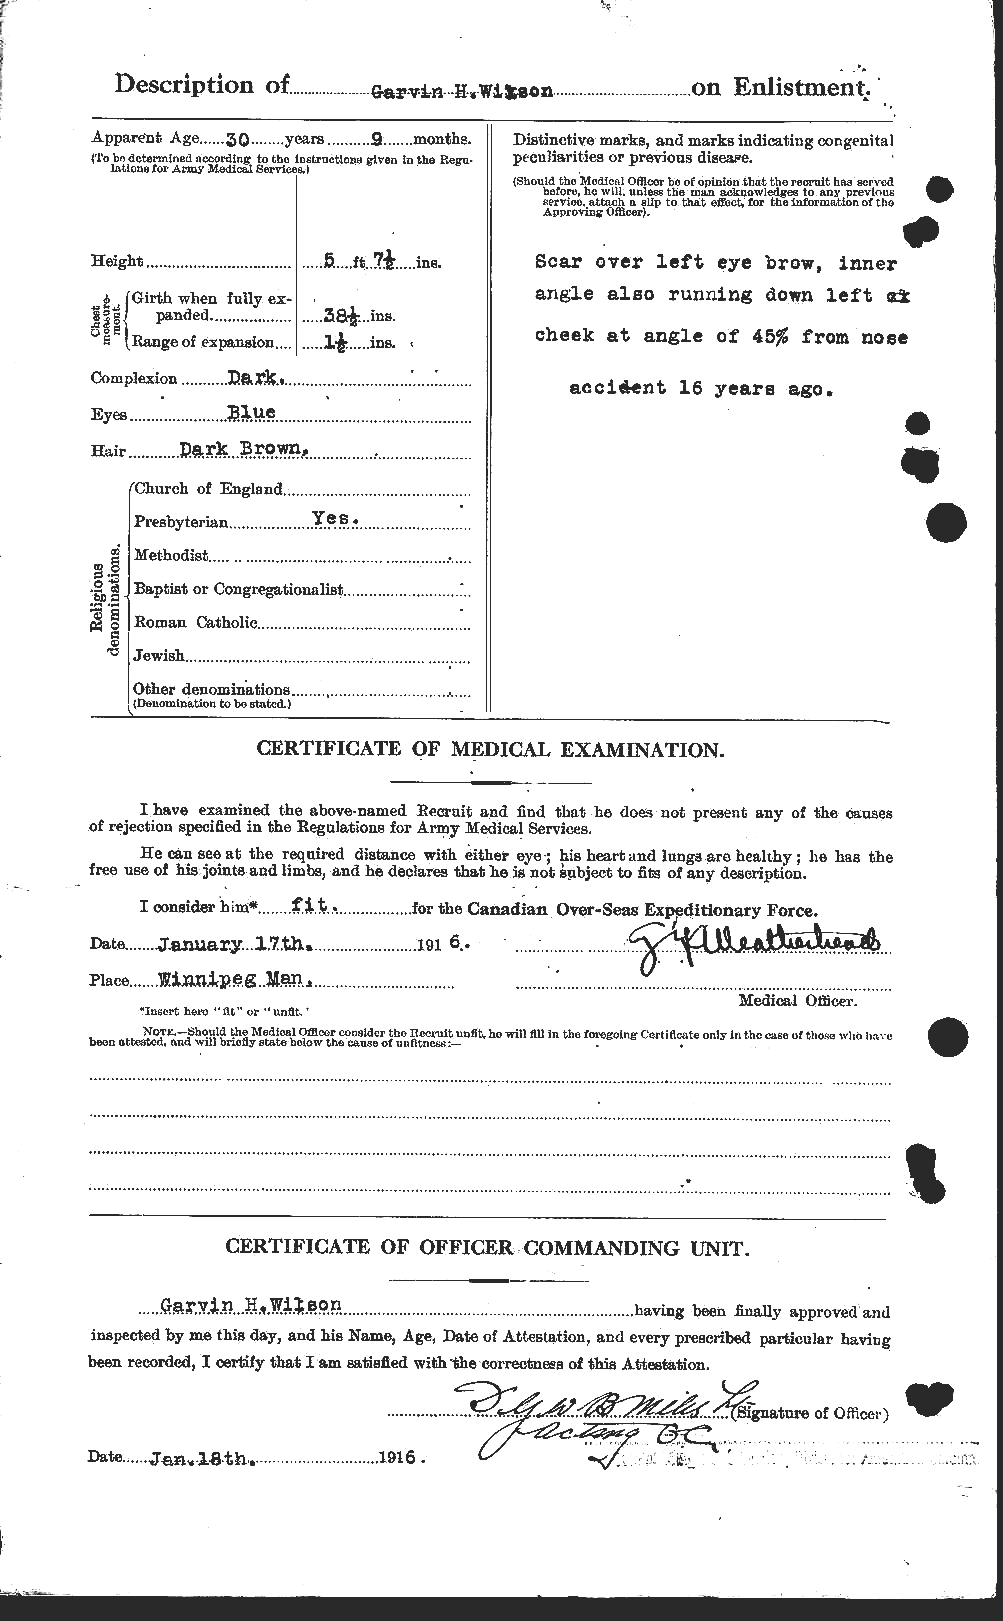 Dossiers du Personnel de la Première Guerre mondiale - CEC 677618b